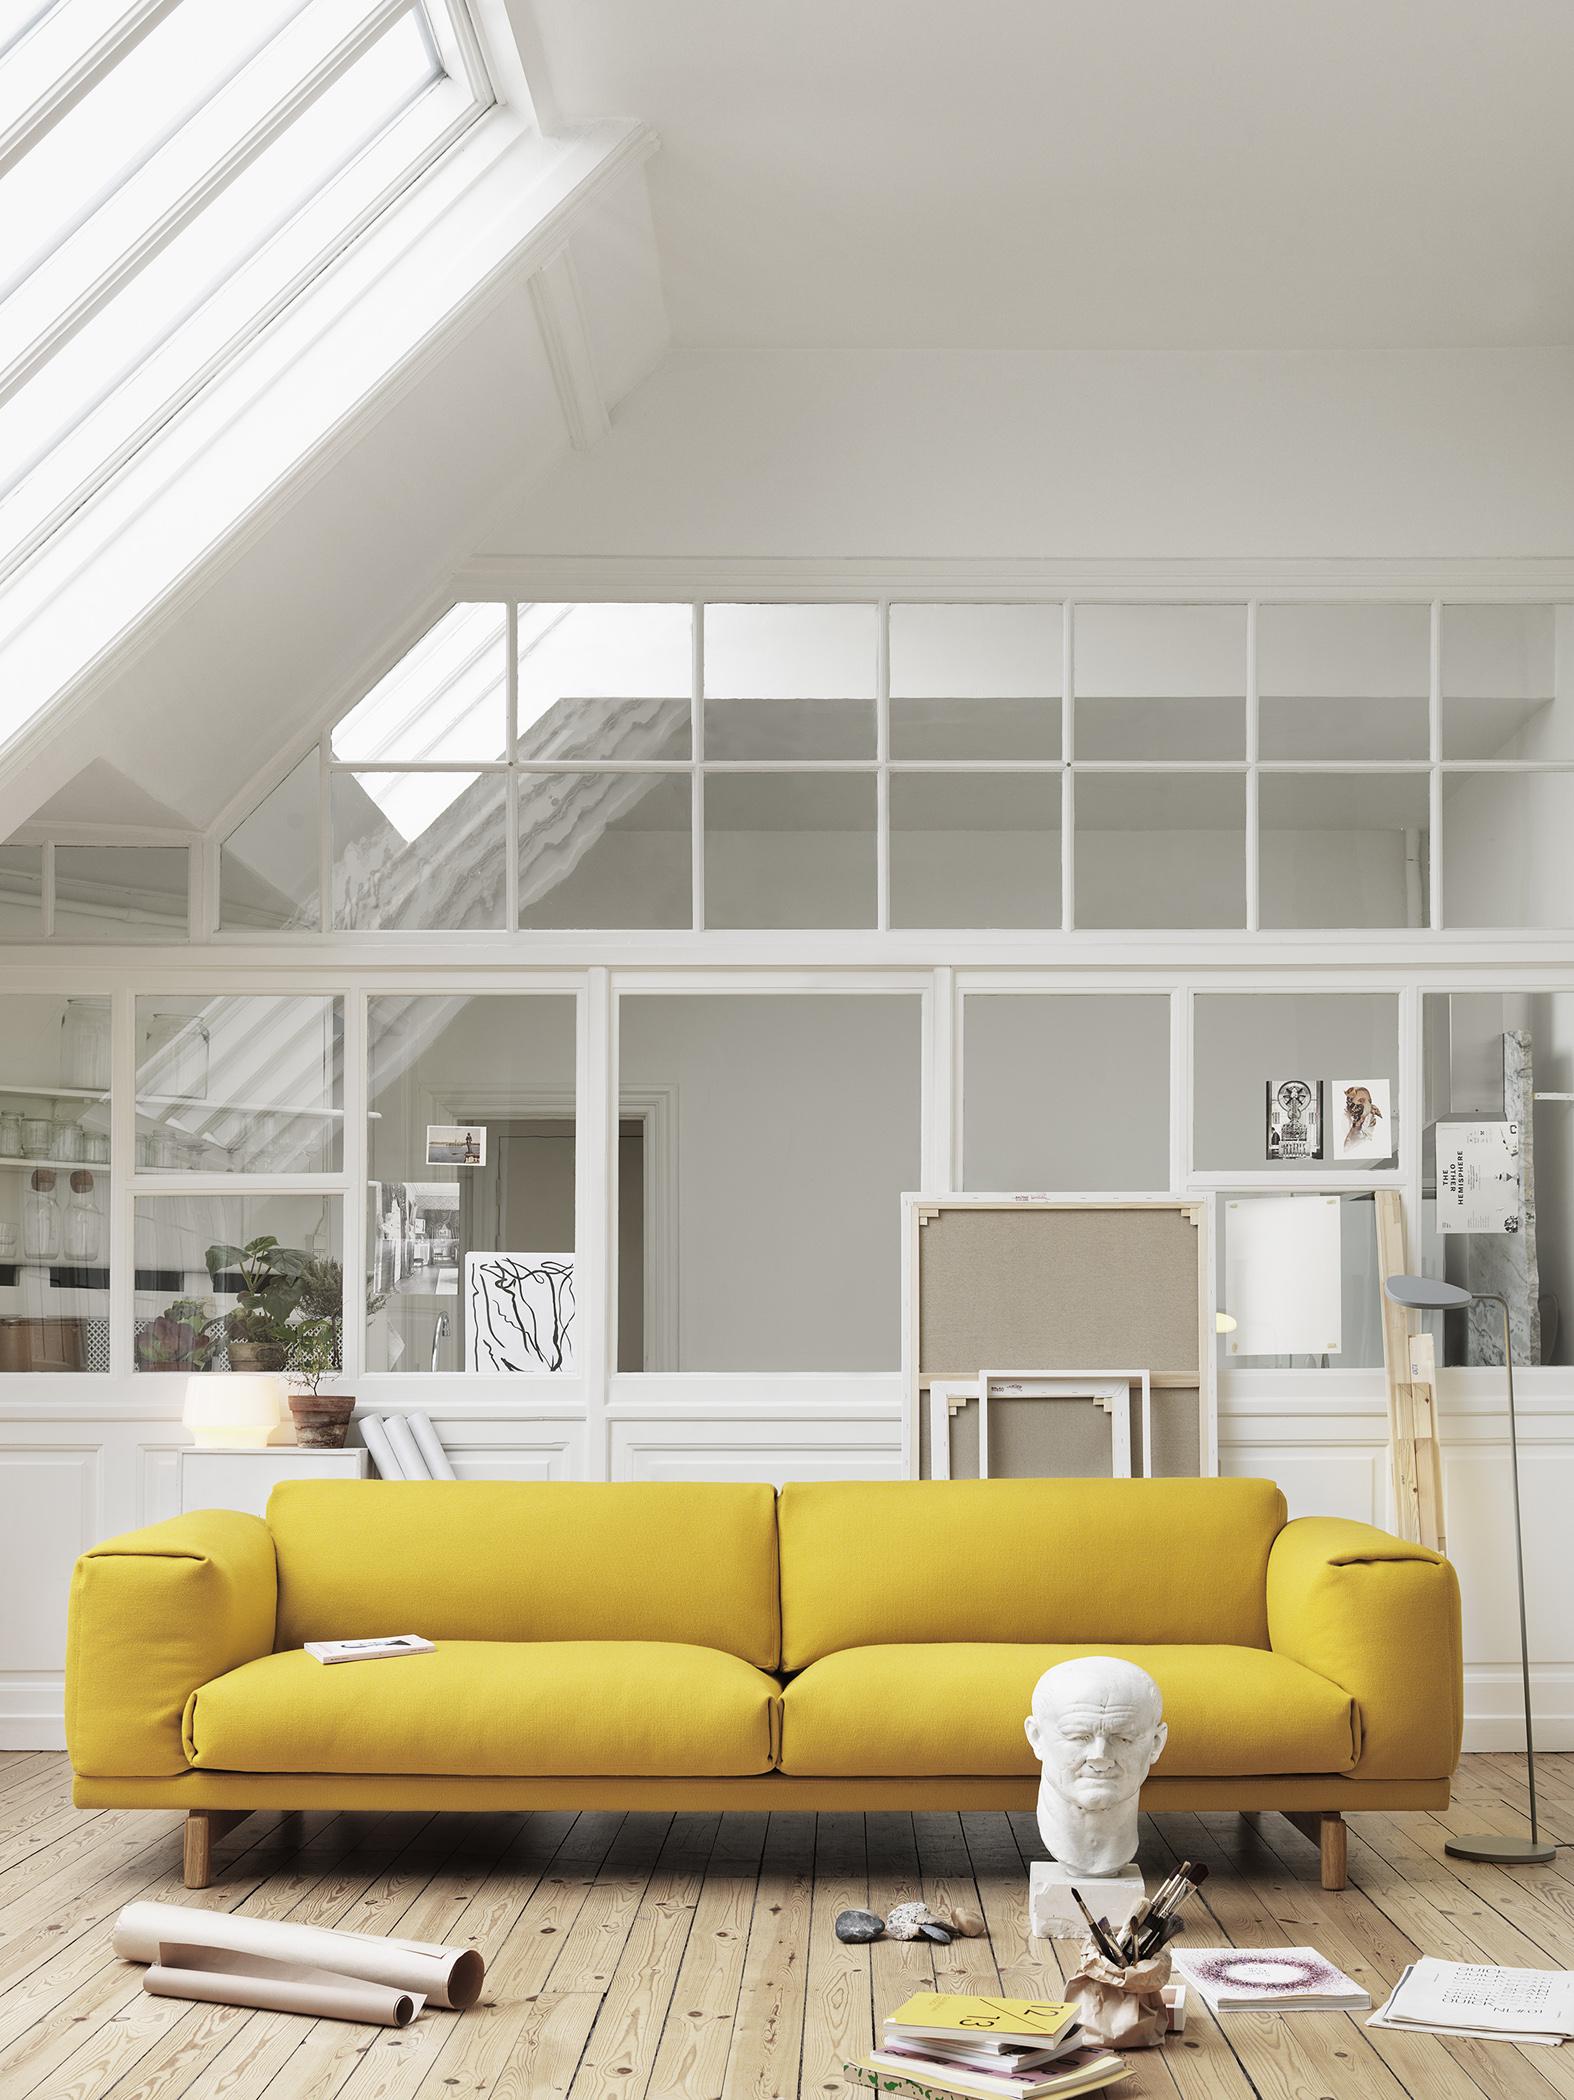 Glasfront vergrößert den Raum optisch #stehlampe #sofa #gelbessofa #zimmergestaltung ©Muuto